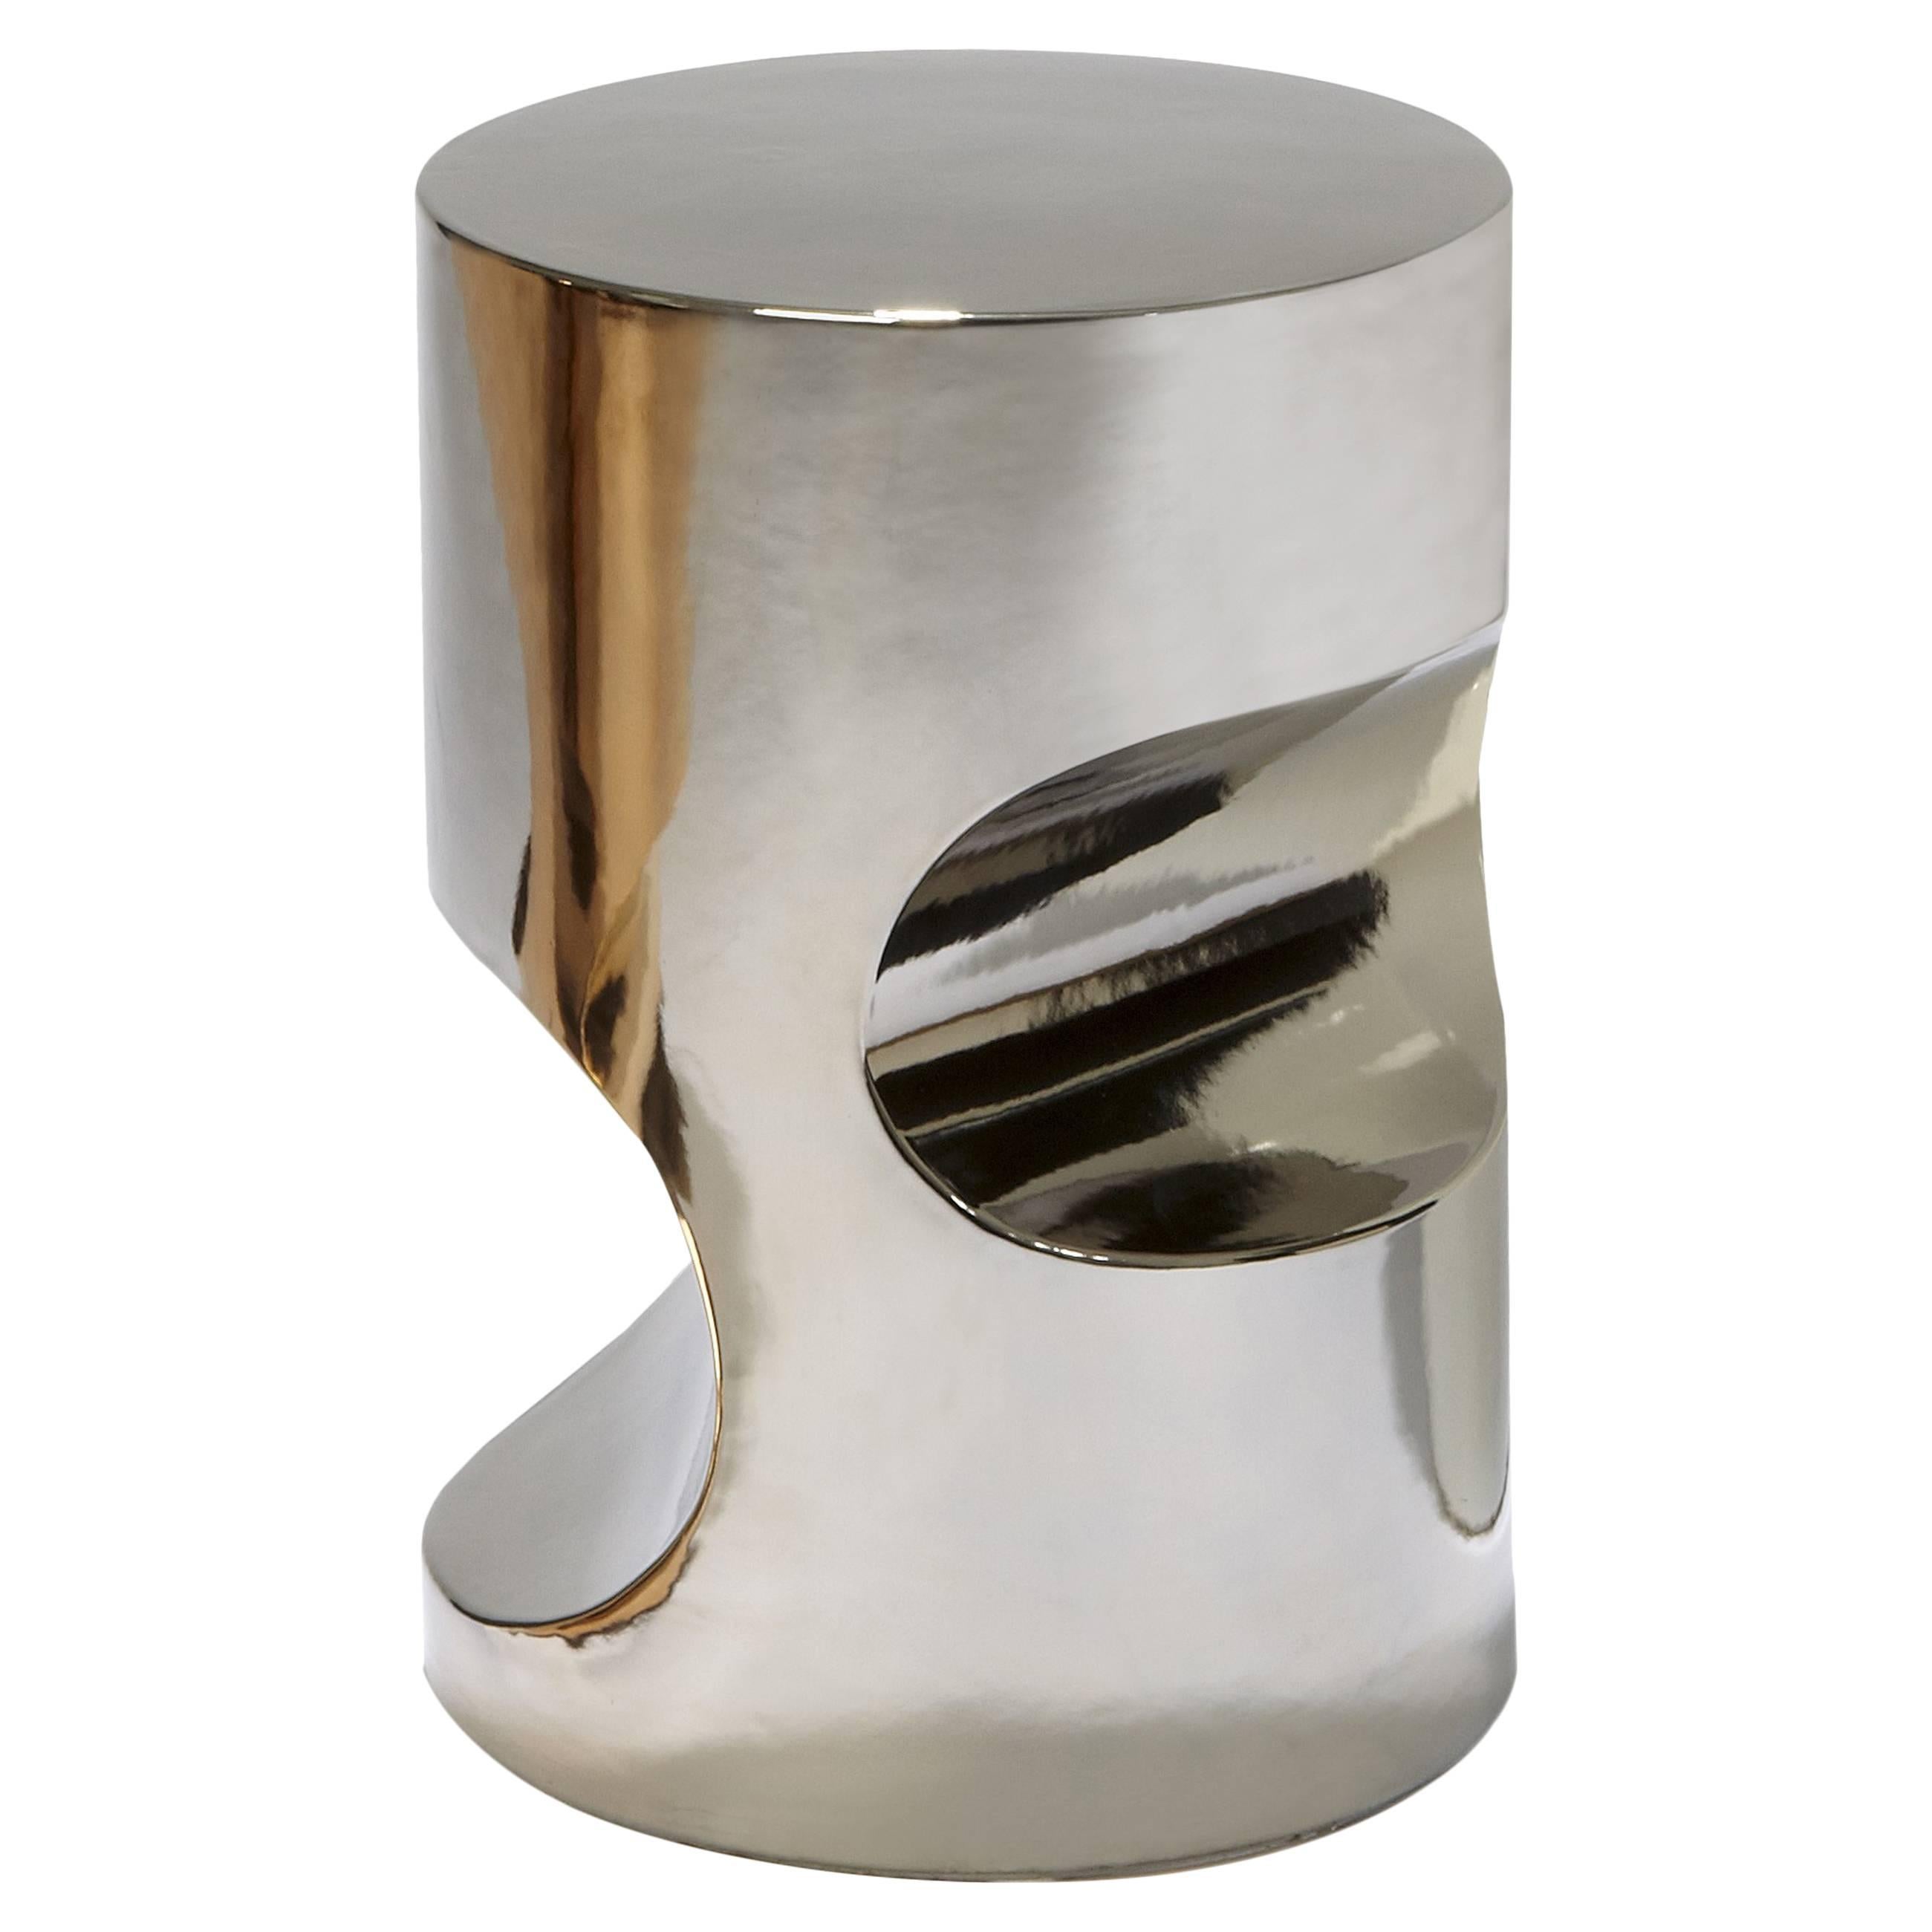 Platinum-Toned Ceramic Stool Fétiche by Hervé Langlais France